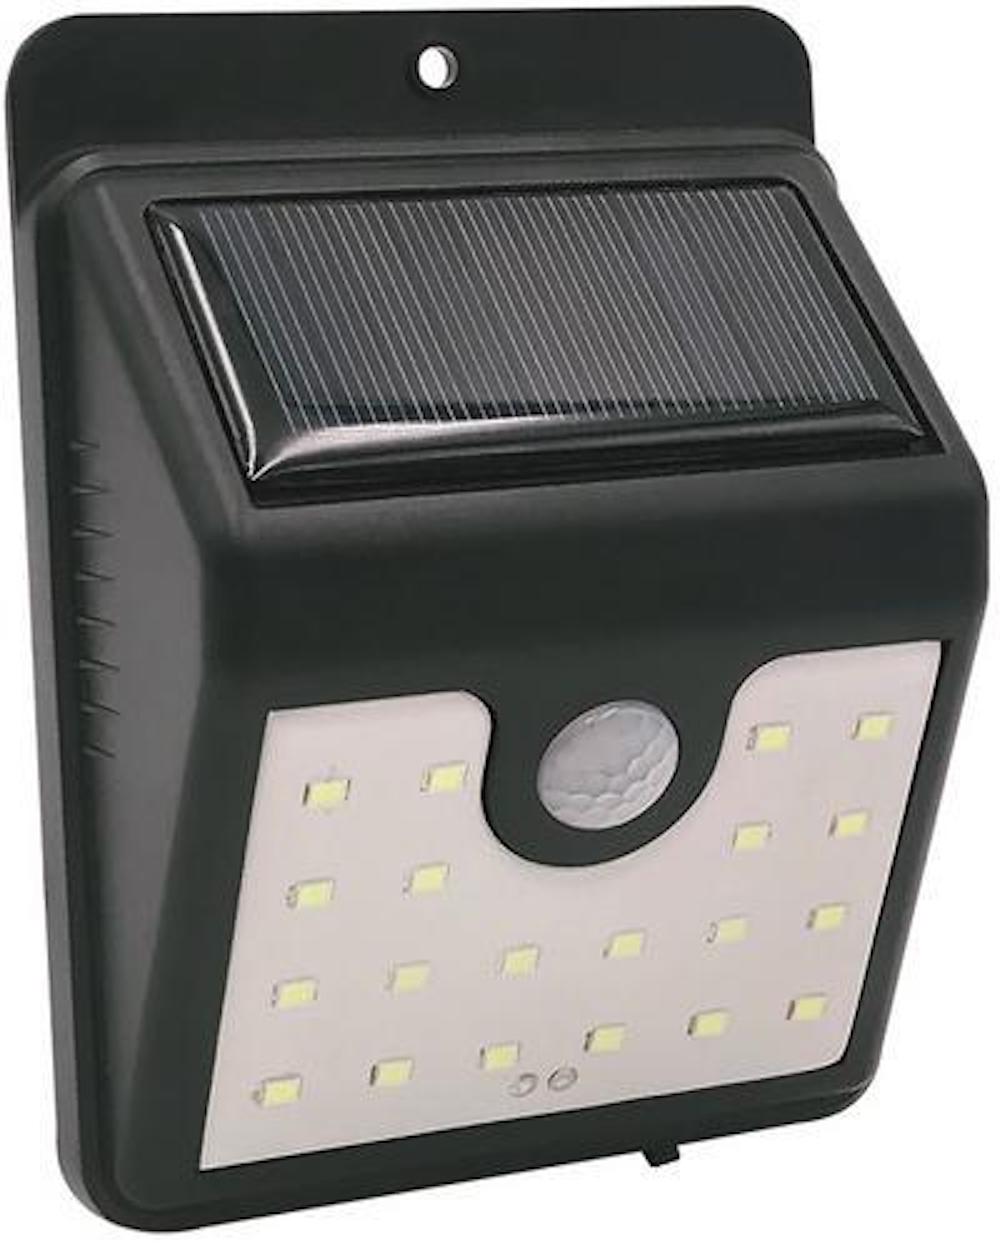 SuperSparSet 10x BERLIN Solarlampe mit automatischer Einschaltfunktion | HxBxT 9x4,5x11,5cm | 20 LEDs | Automatisches Schalten | Bewegungssensor | Gartenlampe, Rattanlampe